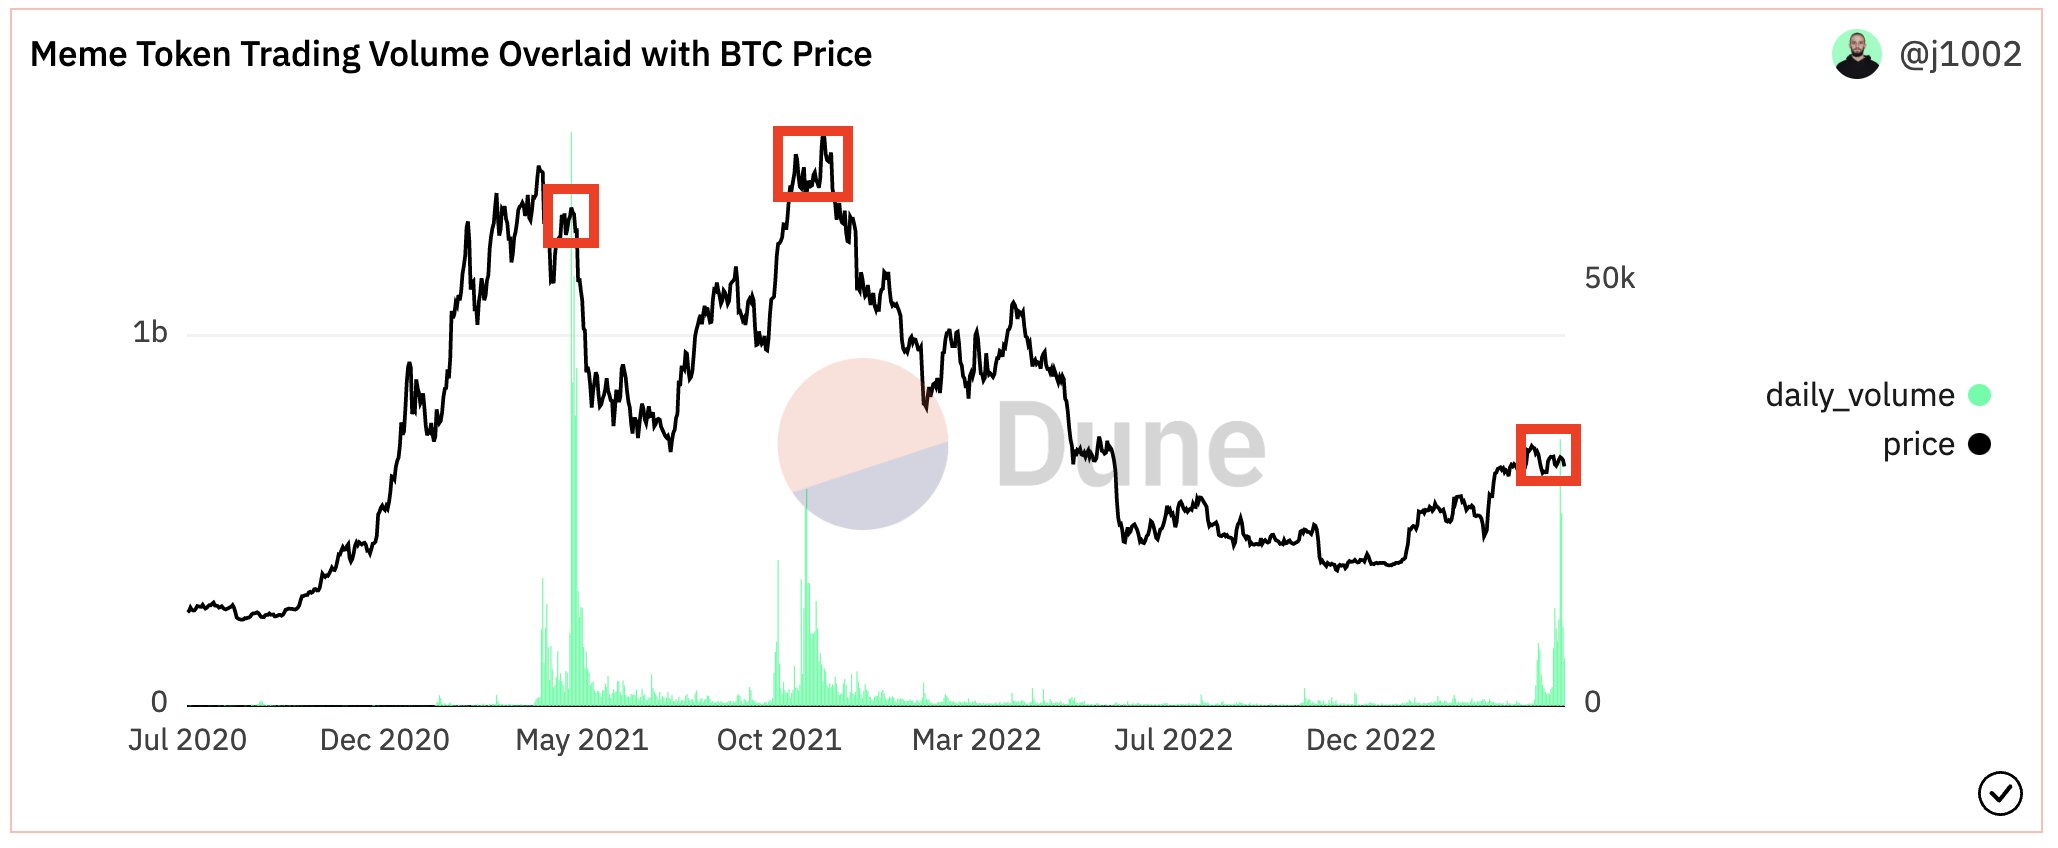 Meme coin trading volume vs Bitcoin price